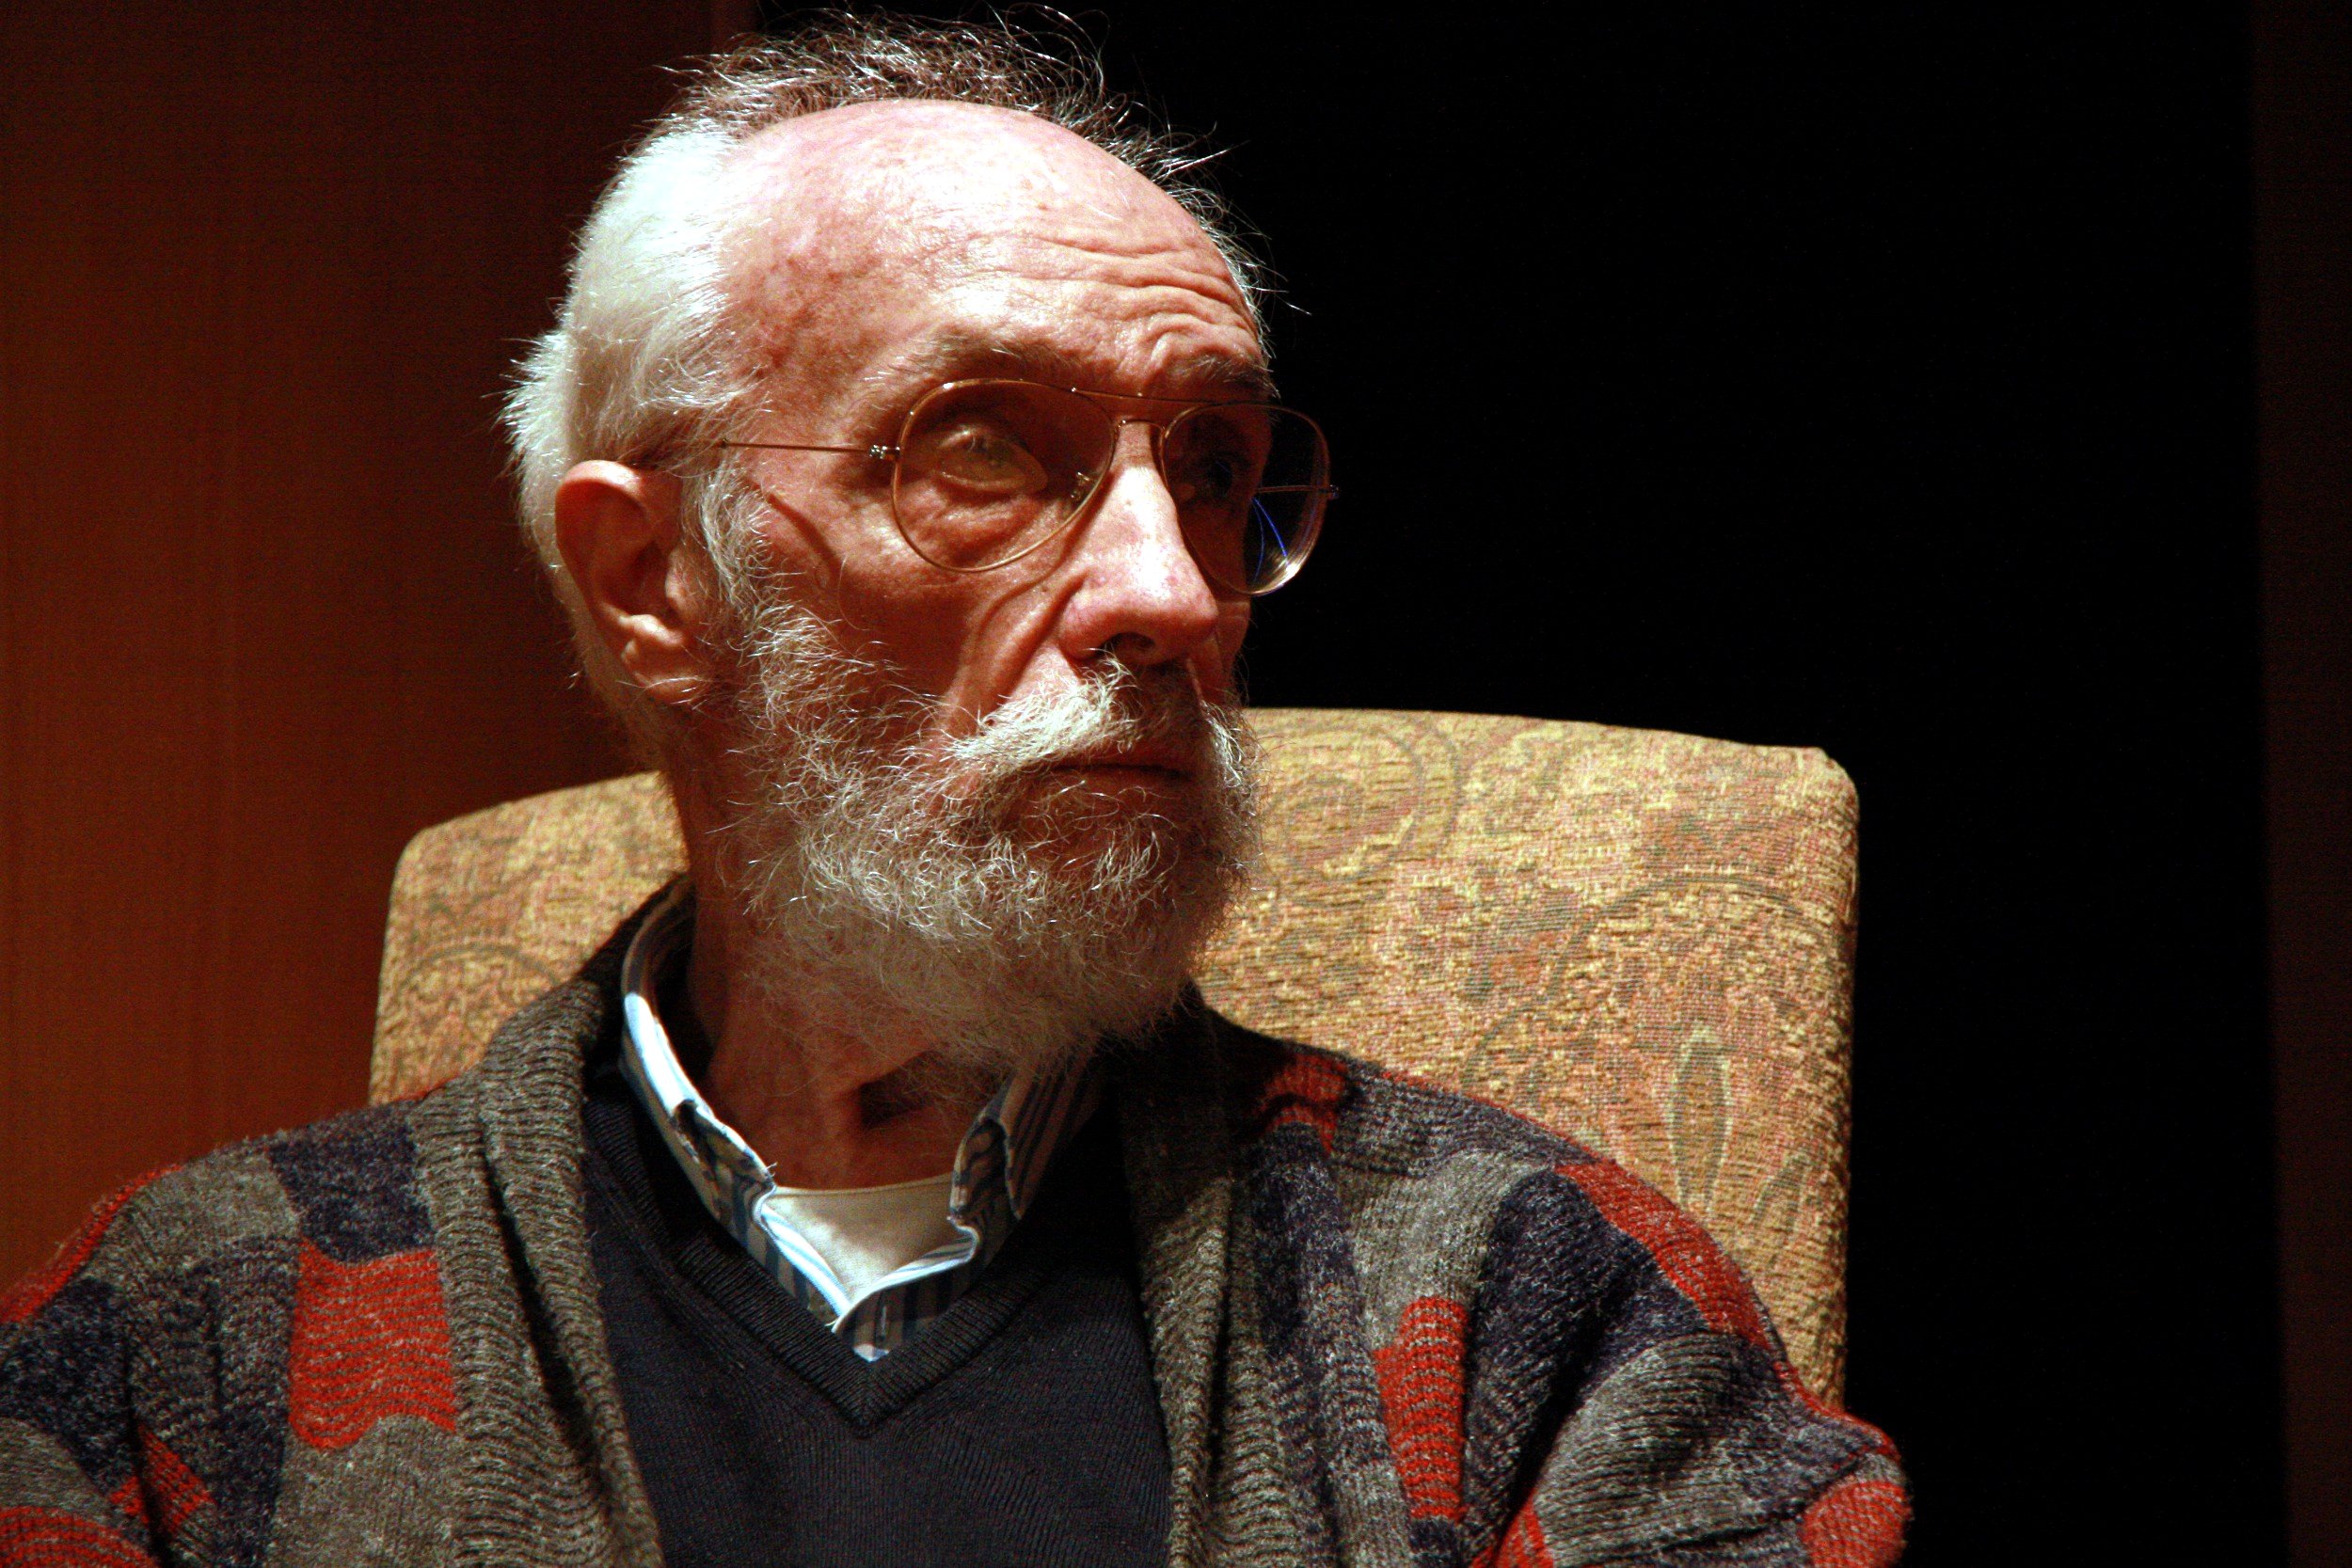 Mor el compositor Josep Soler als 87 anys